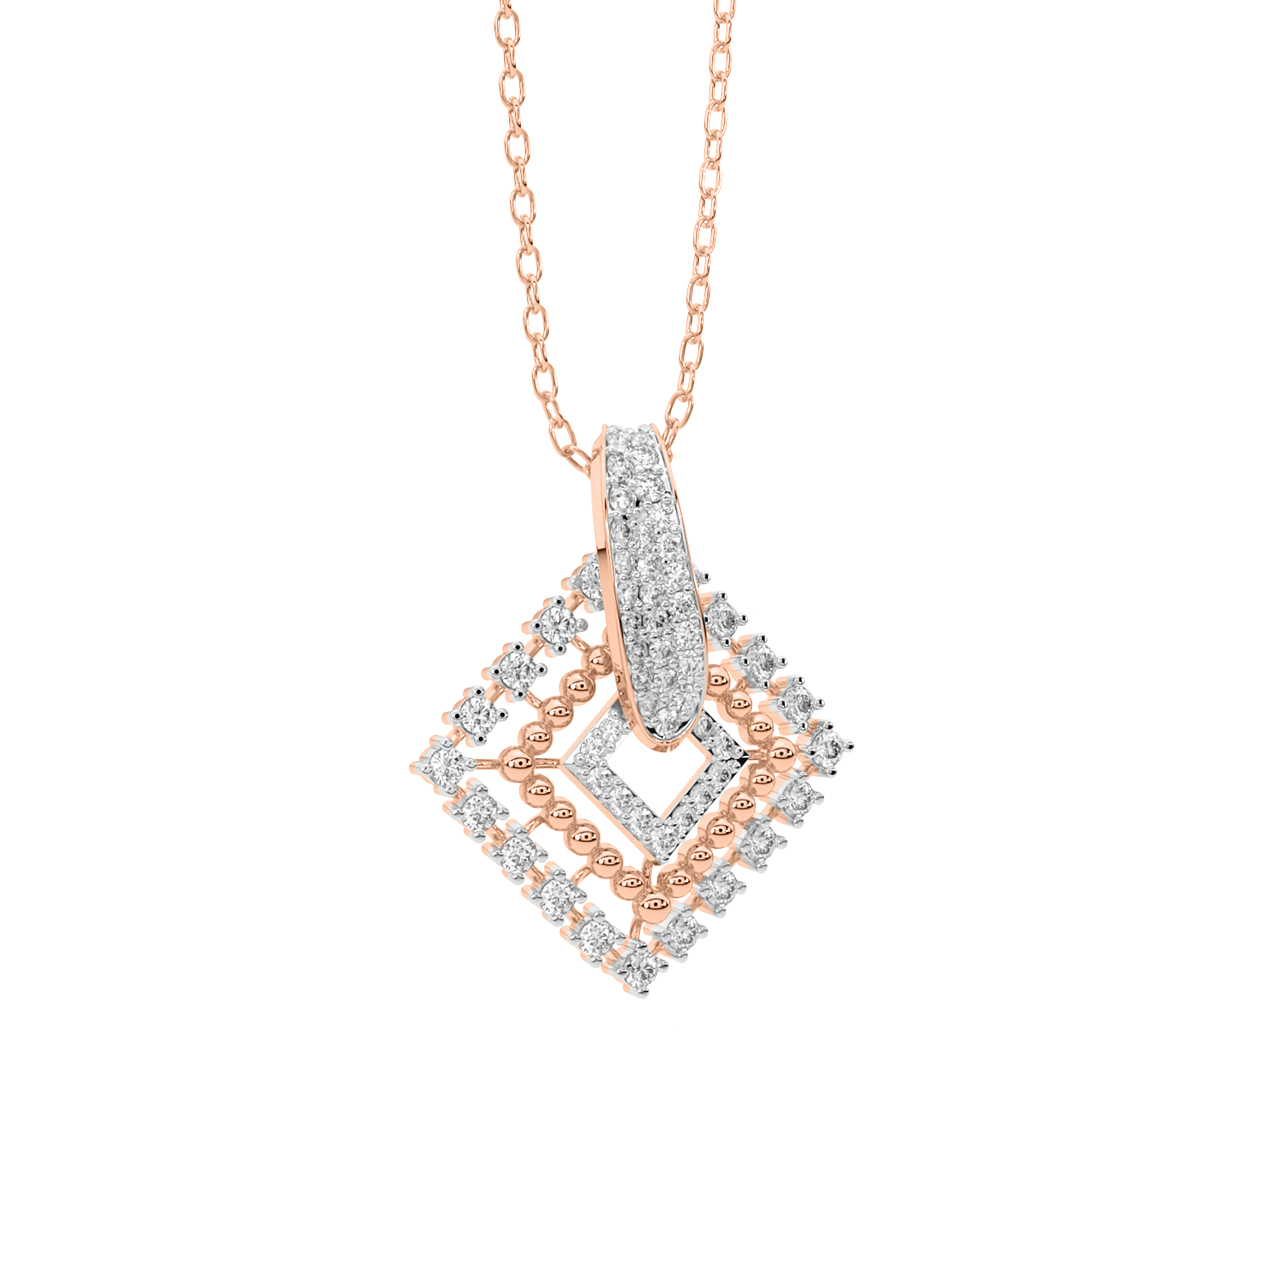 Designer Square Diamond Pendant